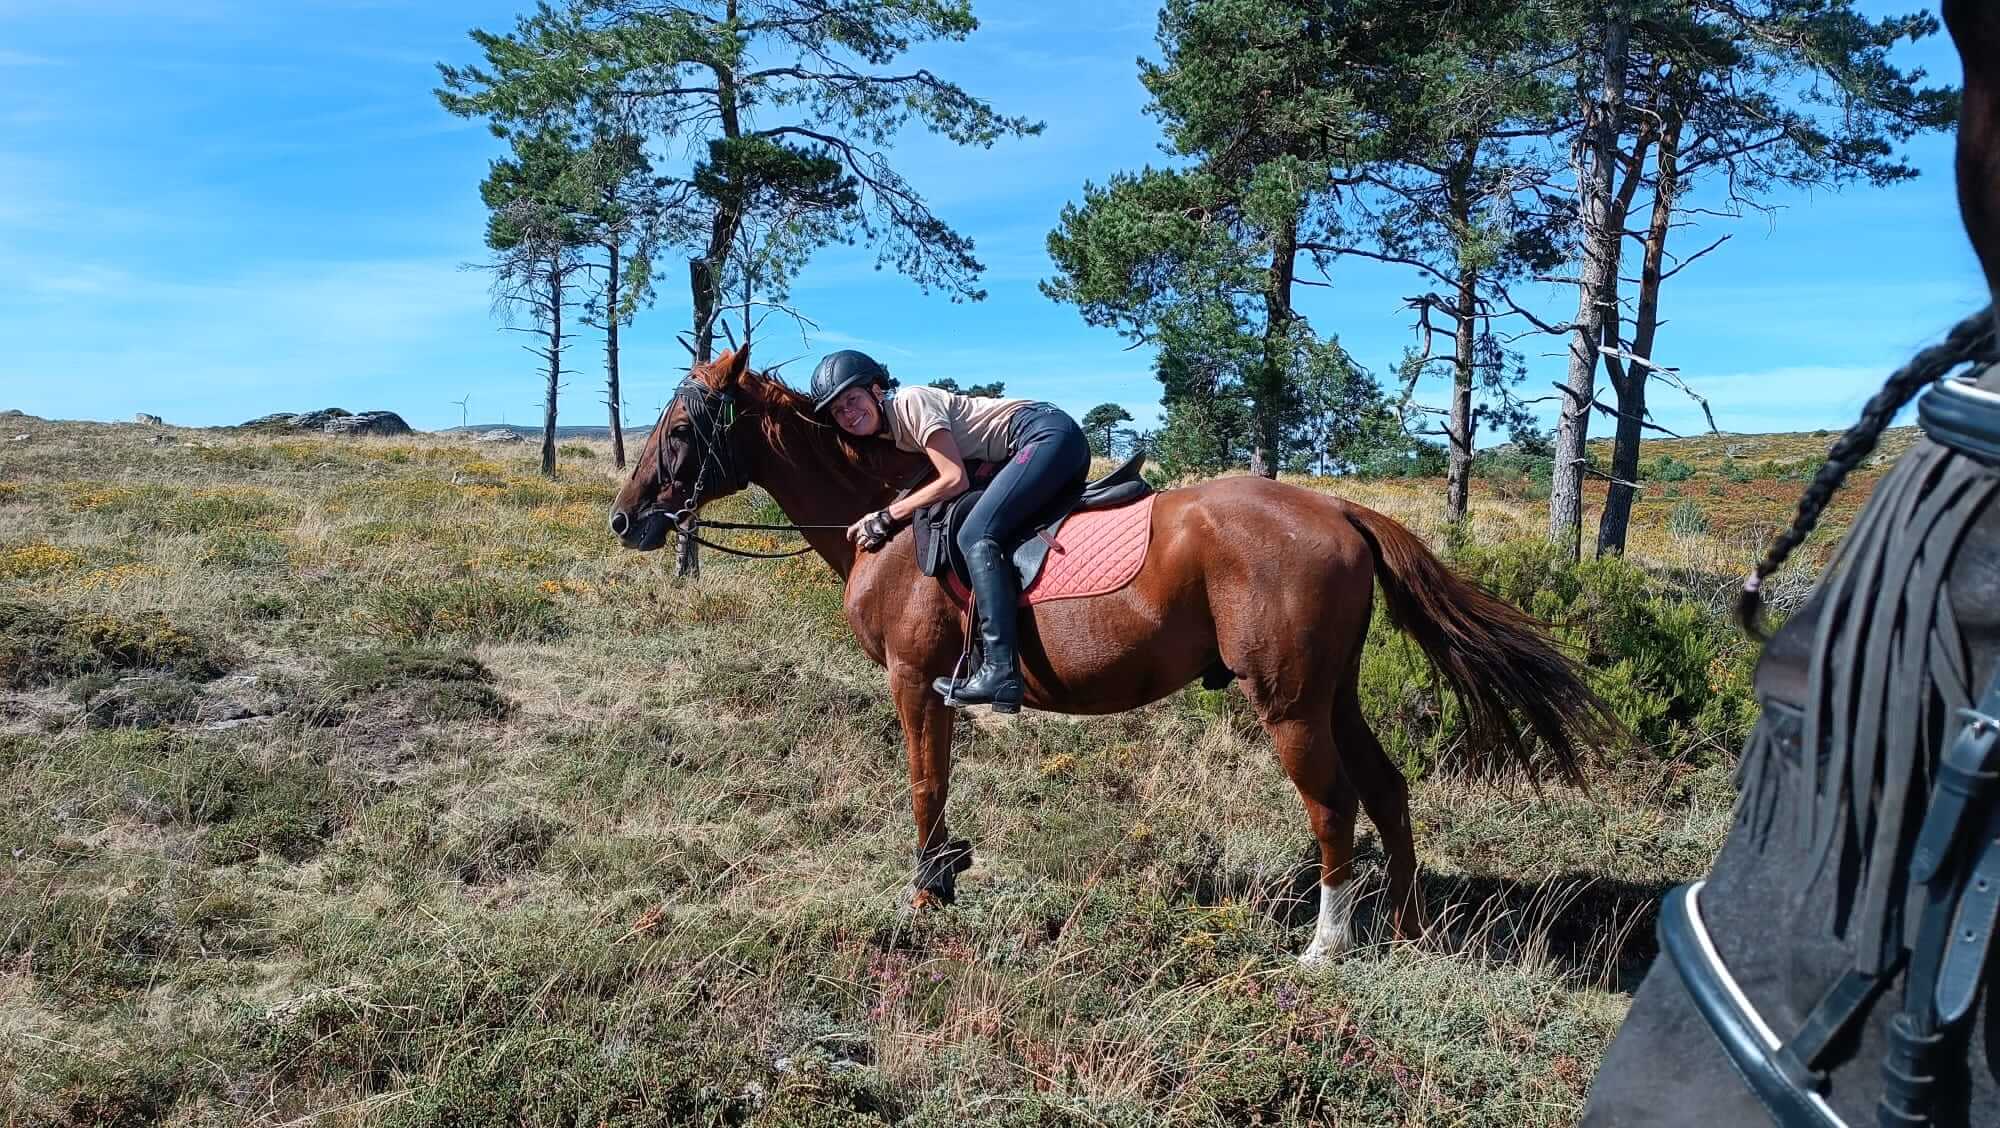 Paardrijvakantie in het noorden van Portugal - Reisverslag en ervaring paardrijvakantie - Vakantie te paard / Reisbureau Perlan